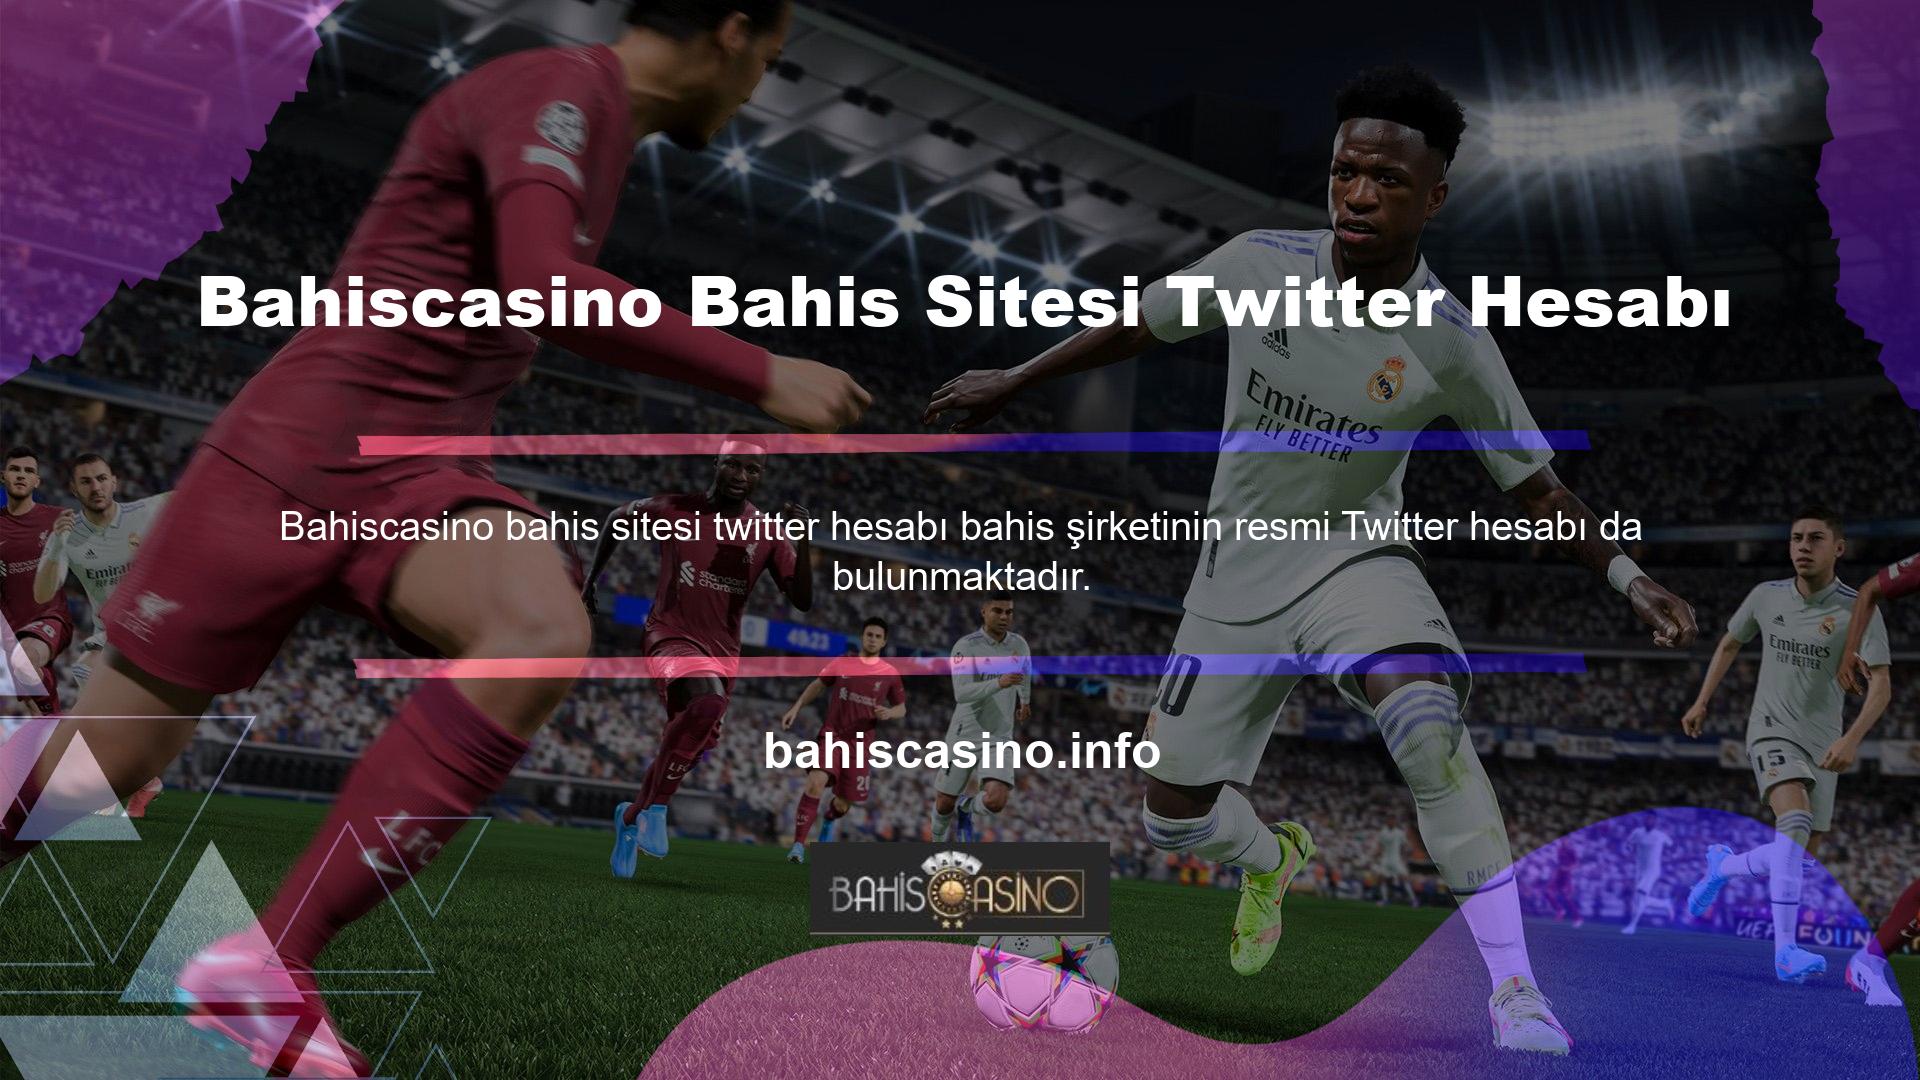 Bahisçiler ve bahis dünyasına ilgi duyanlar, Bahiscasino bahis şirketi haberlerine Twitter üzerinden de ulaşabilirler